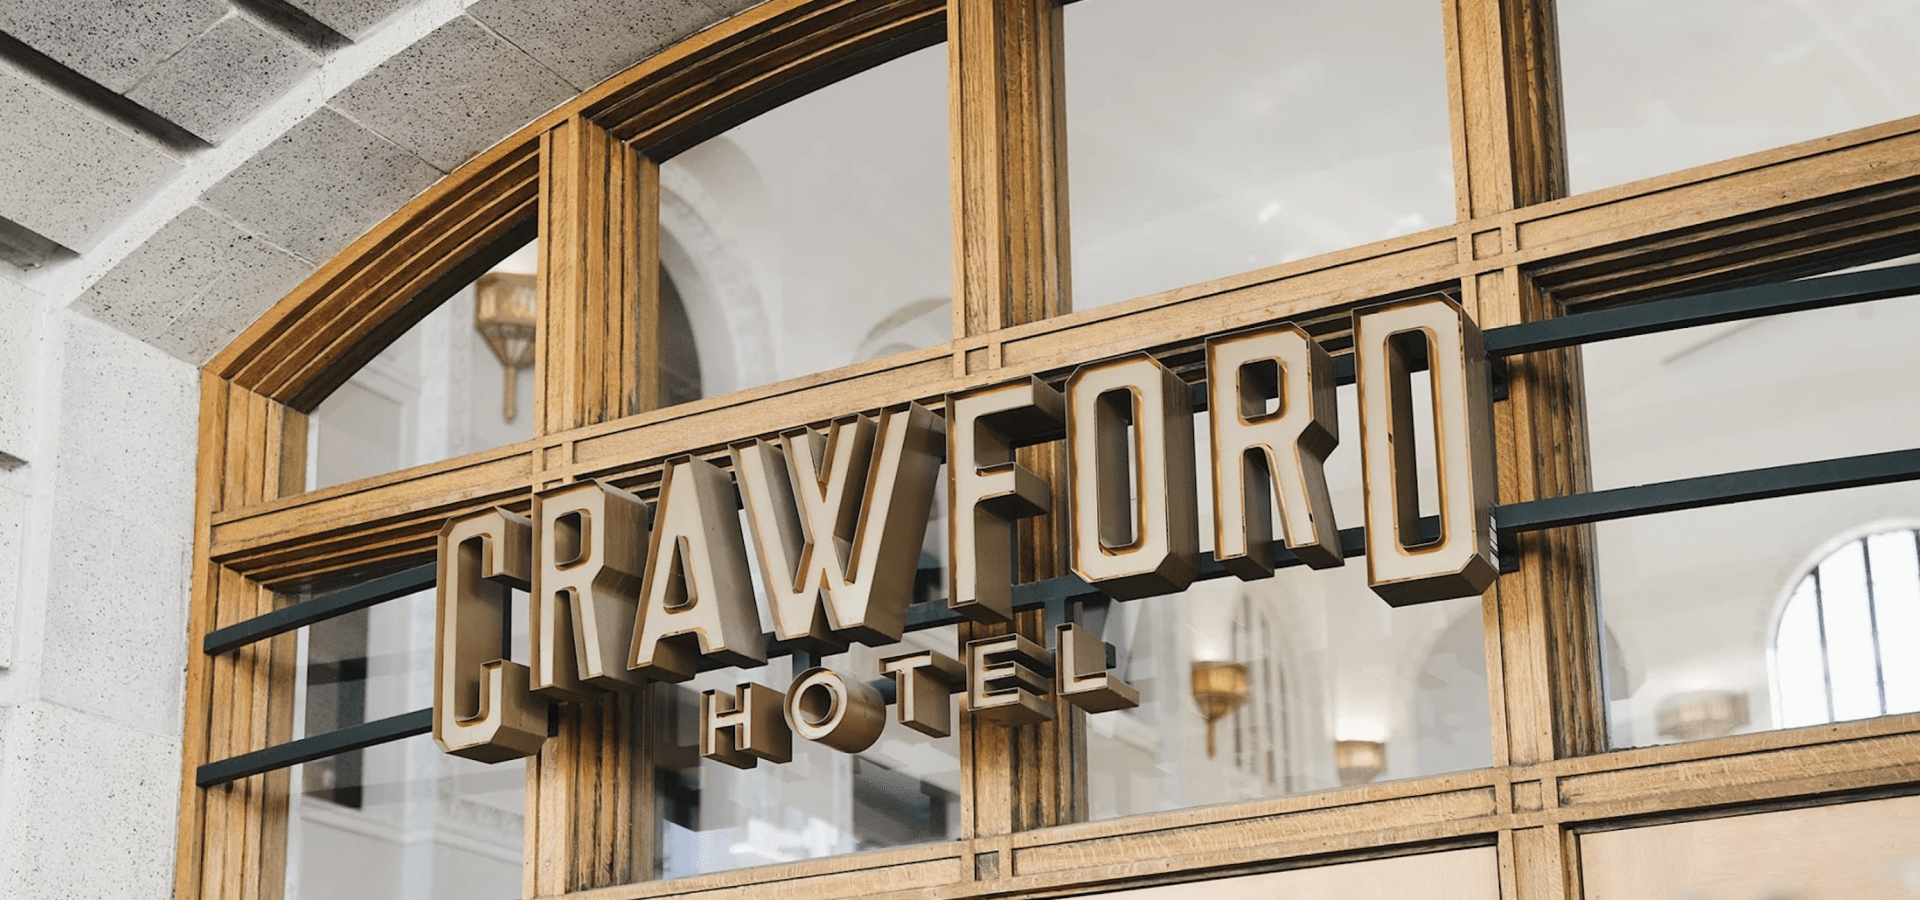 Crawford hotel